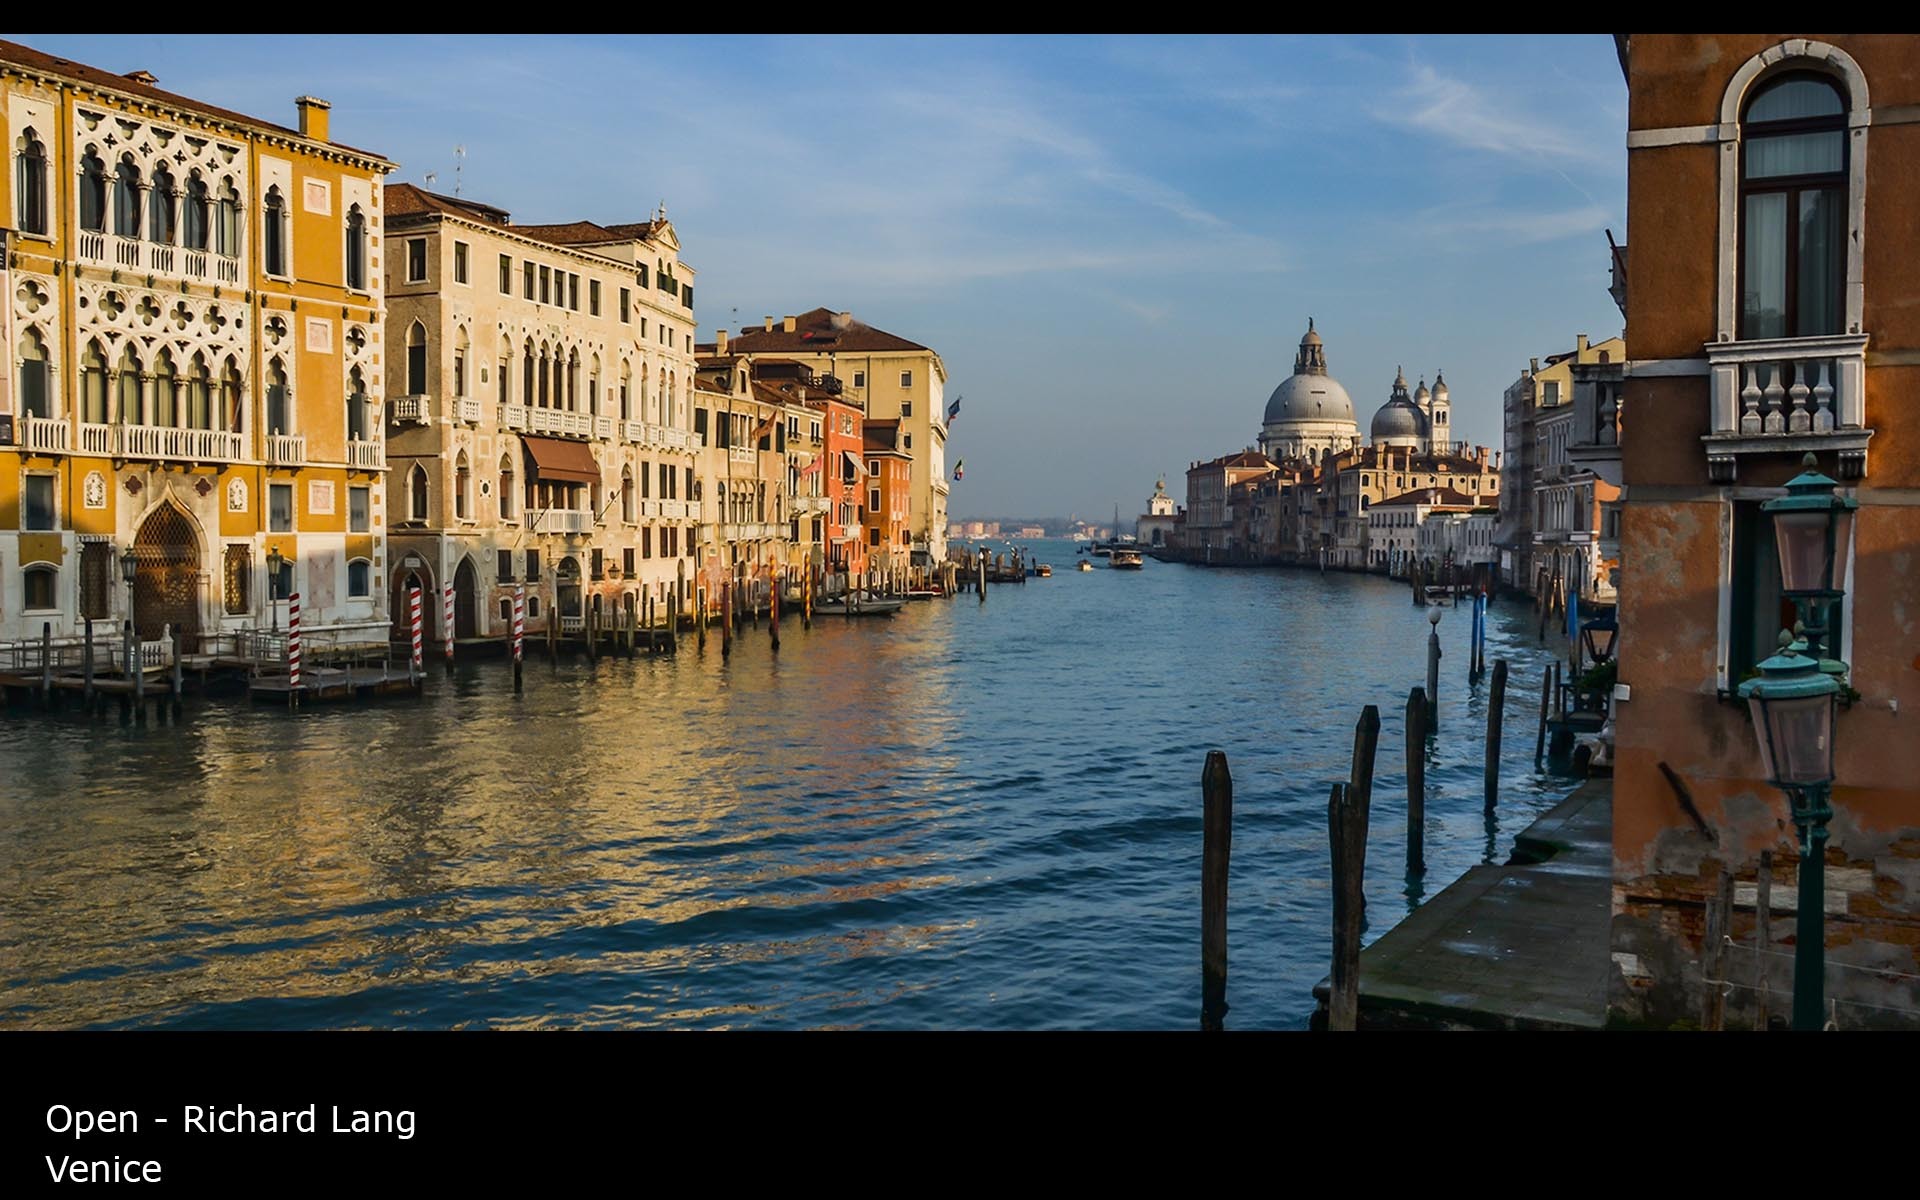 Venice - Richard Lang